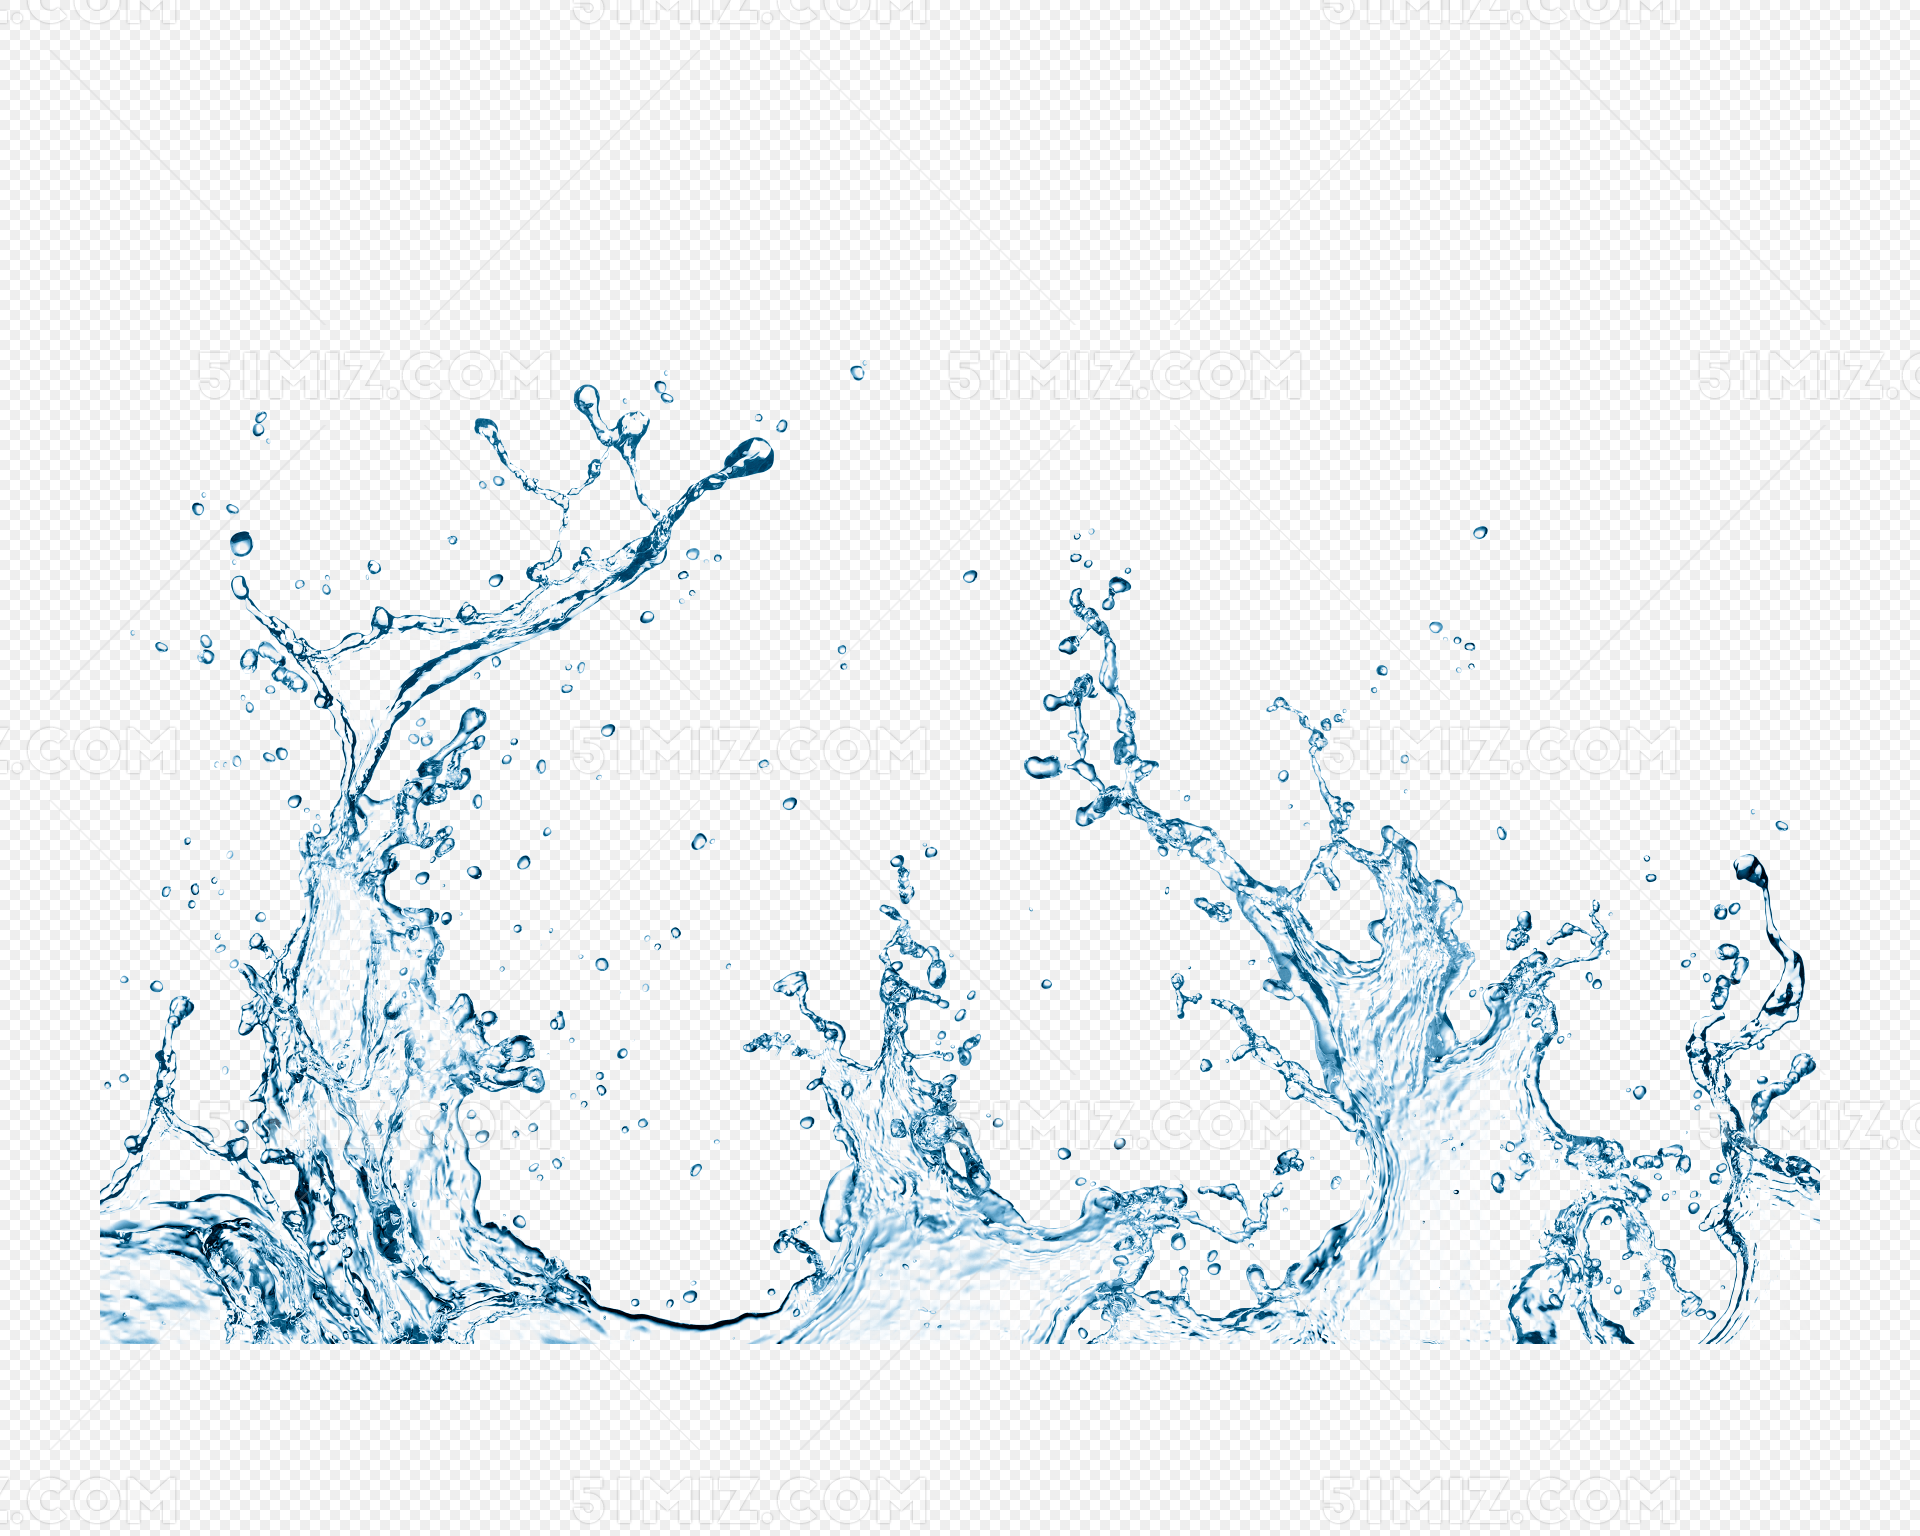 水柱圖案素材 | PNG和向量圖 | 透明背景圖片 | 免費下载 - Pngtree